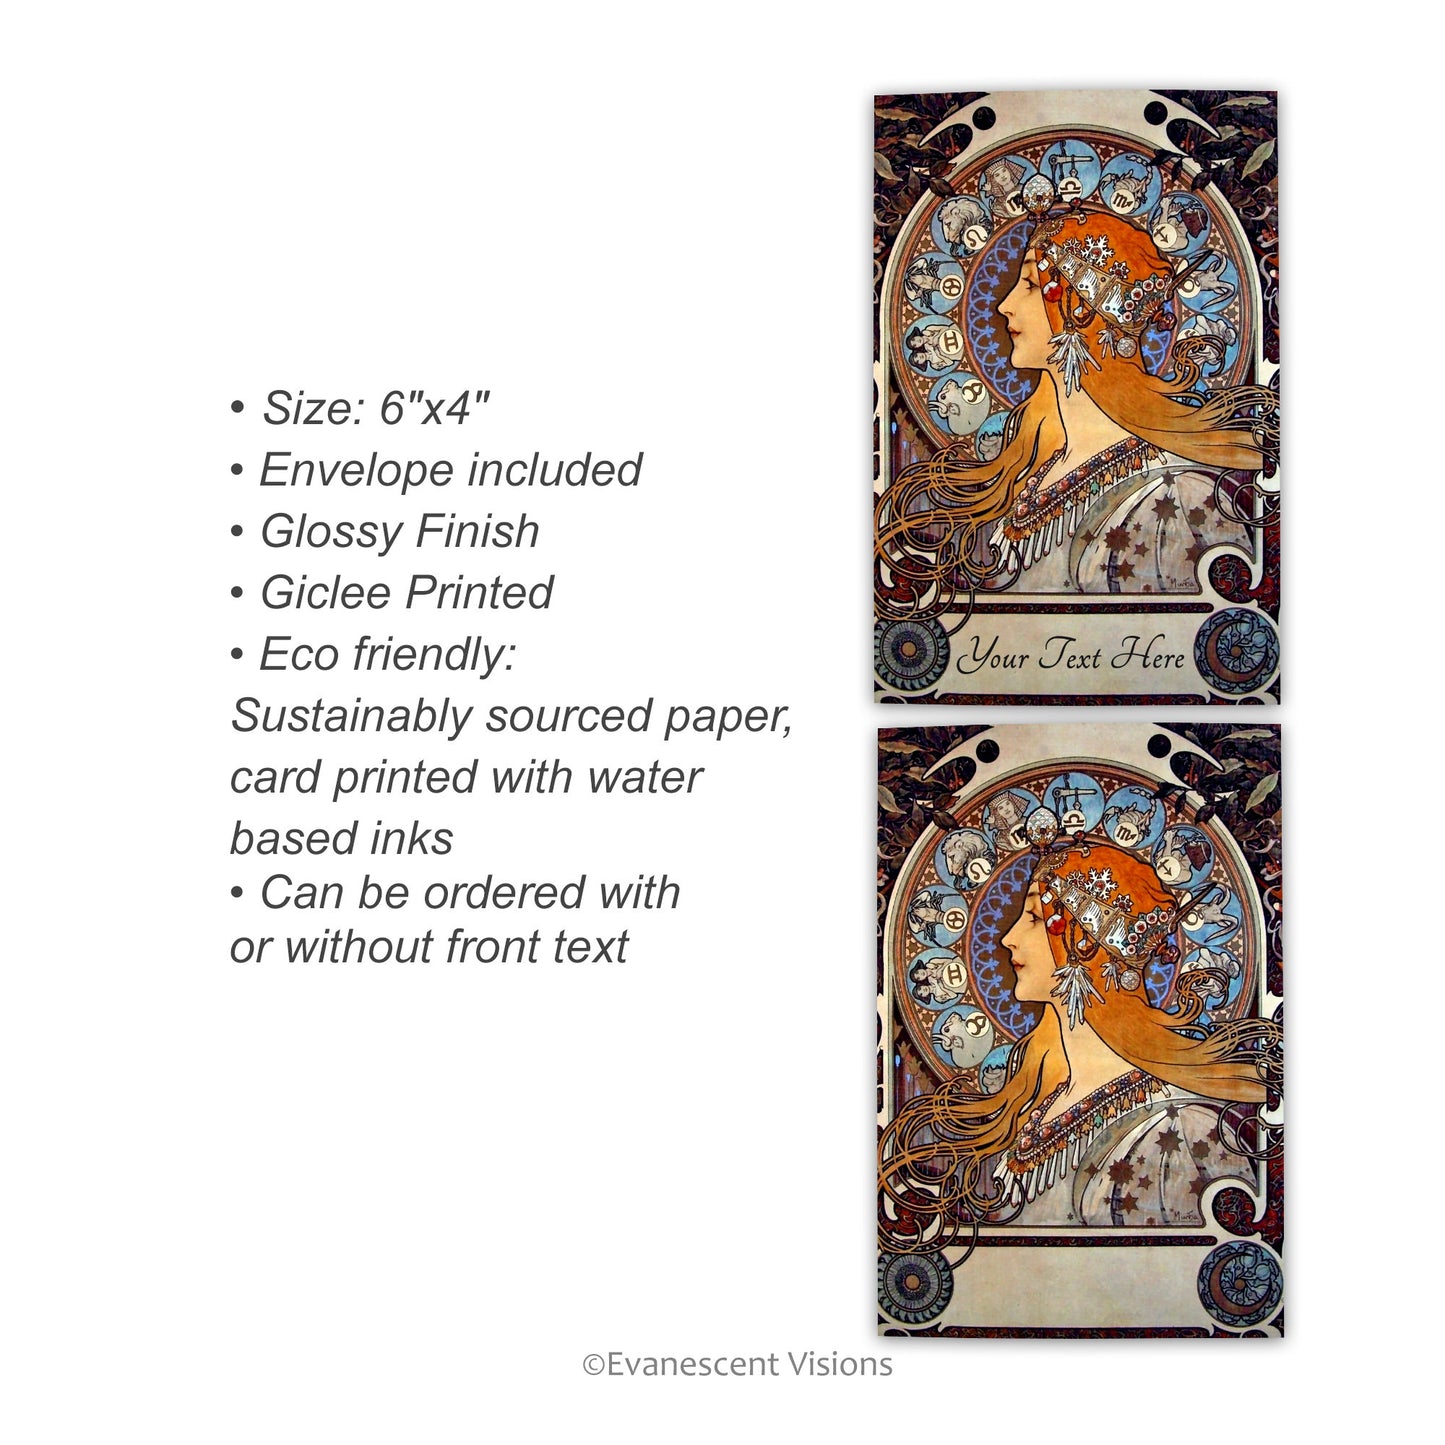 Art Nouveau Zodiac Card, With product detail text